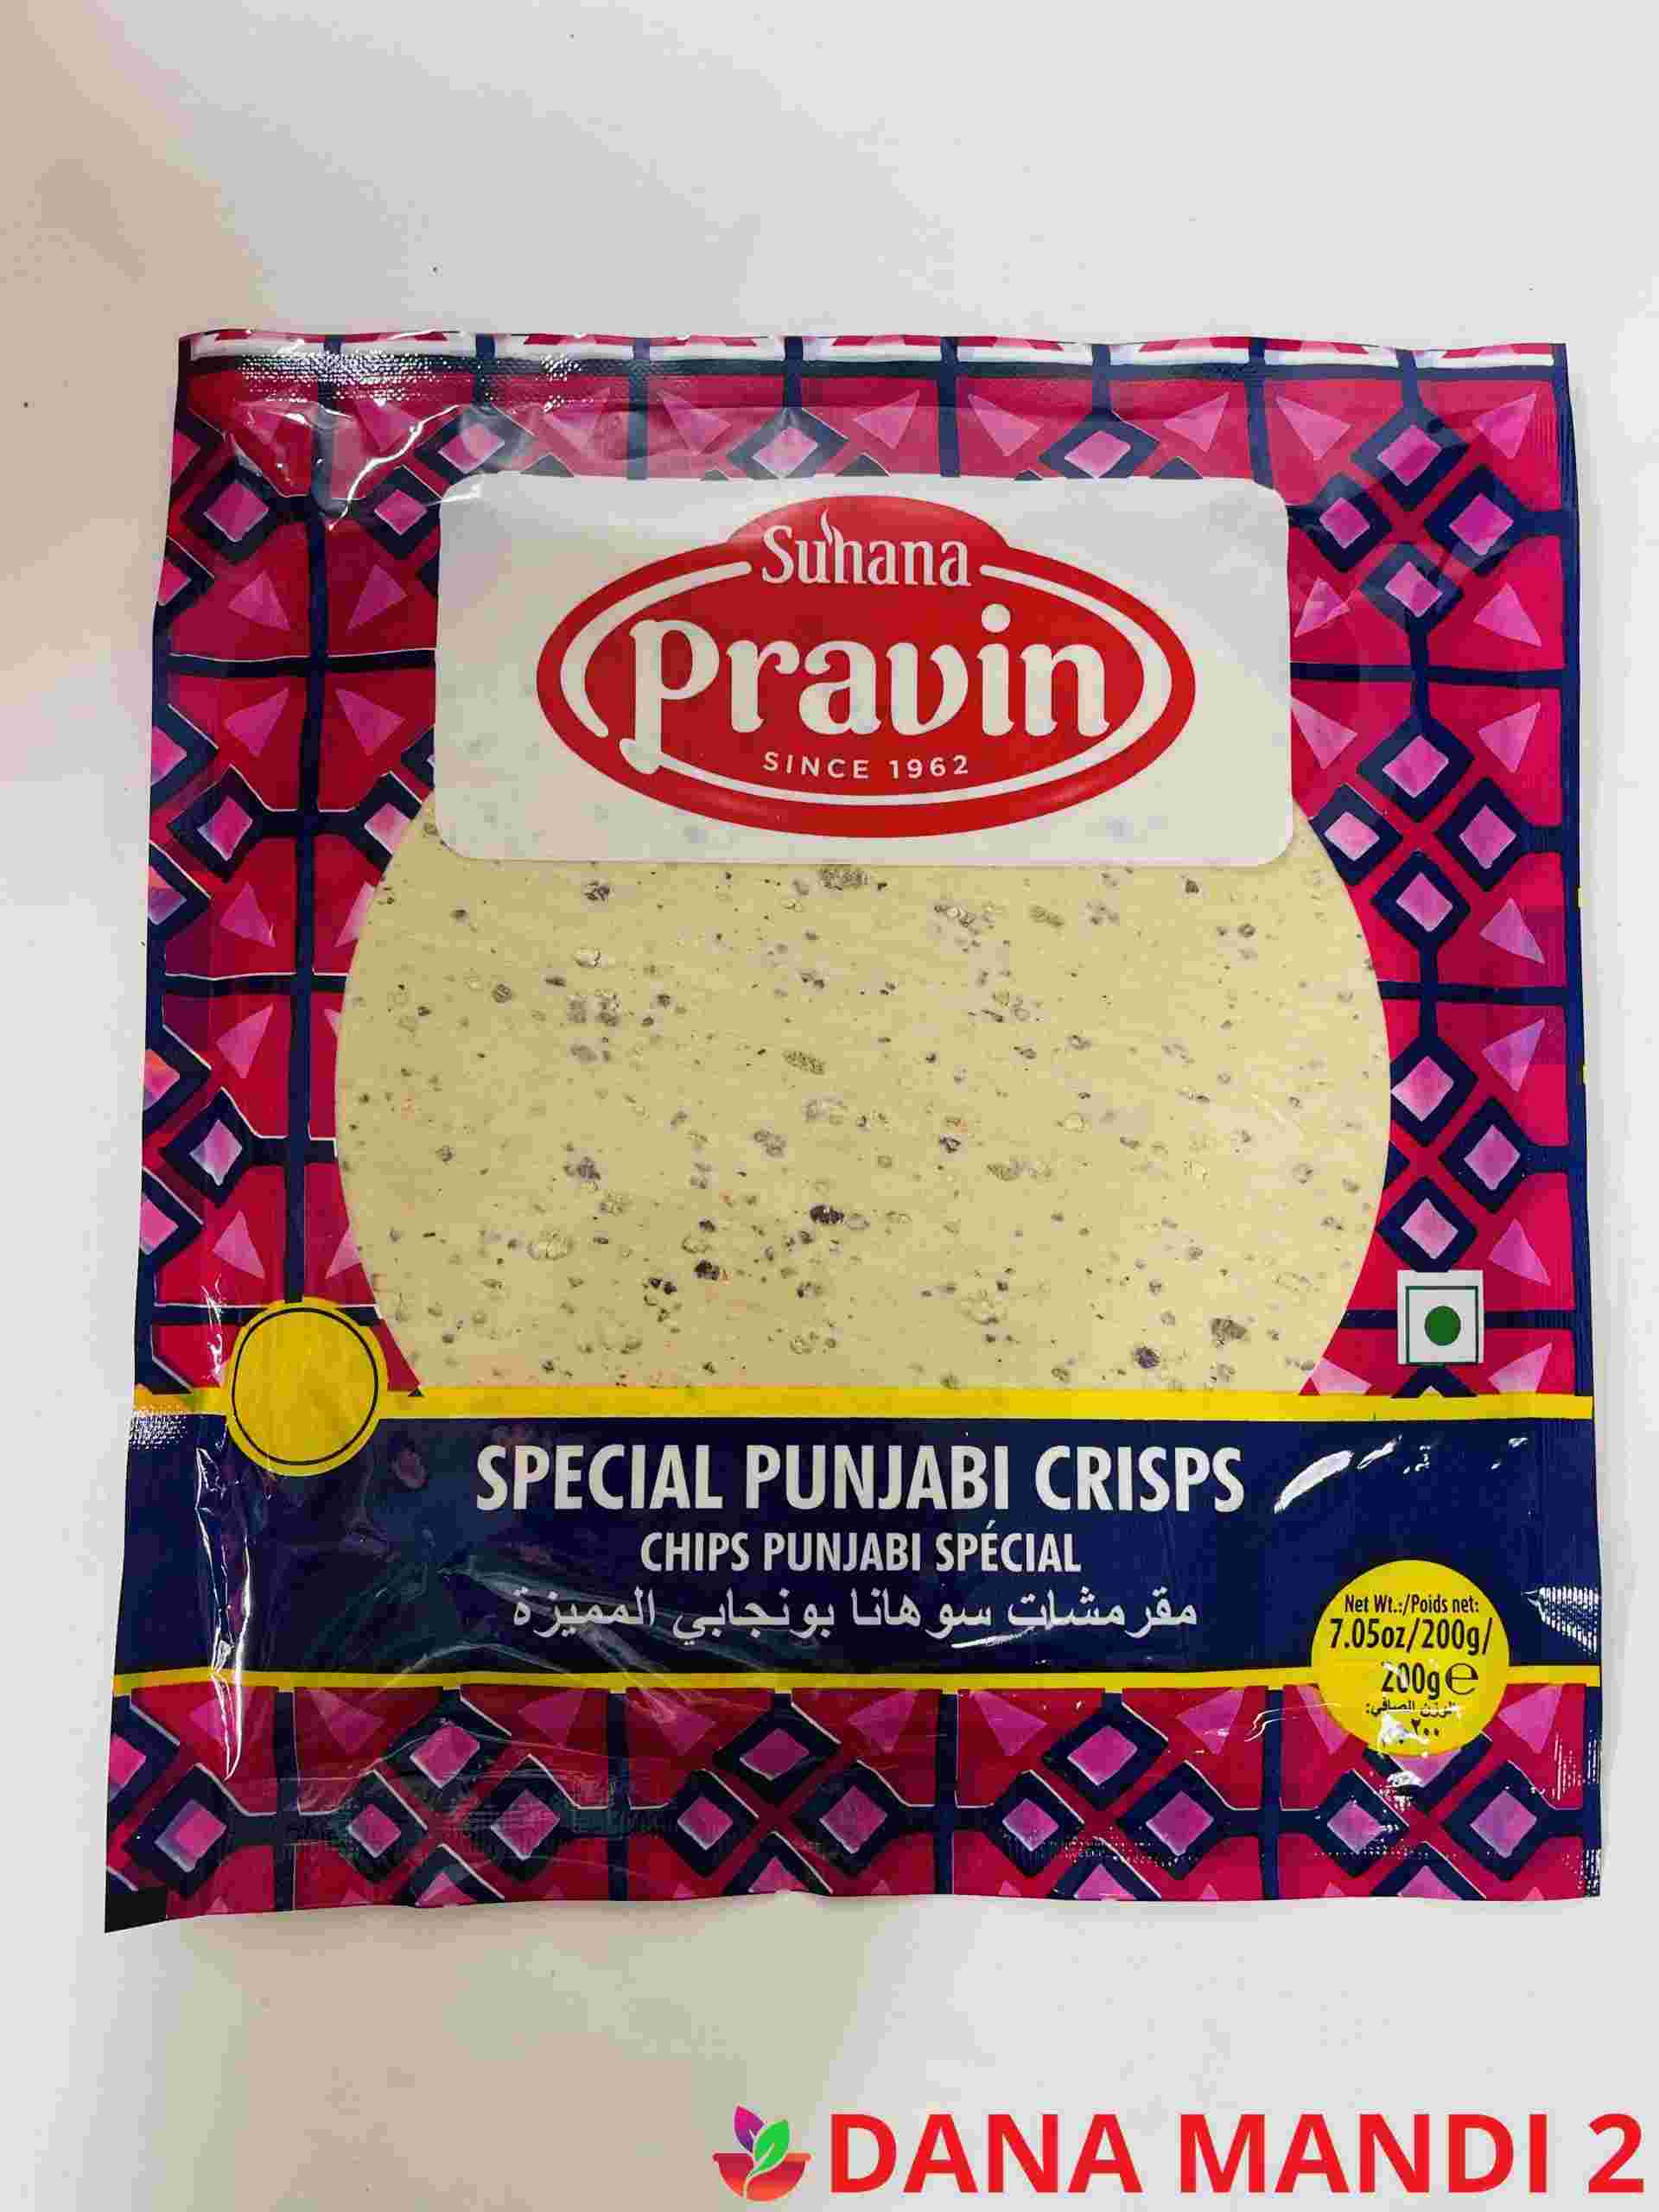 SUHANA PRAVIN Punjabi Papad